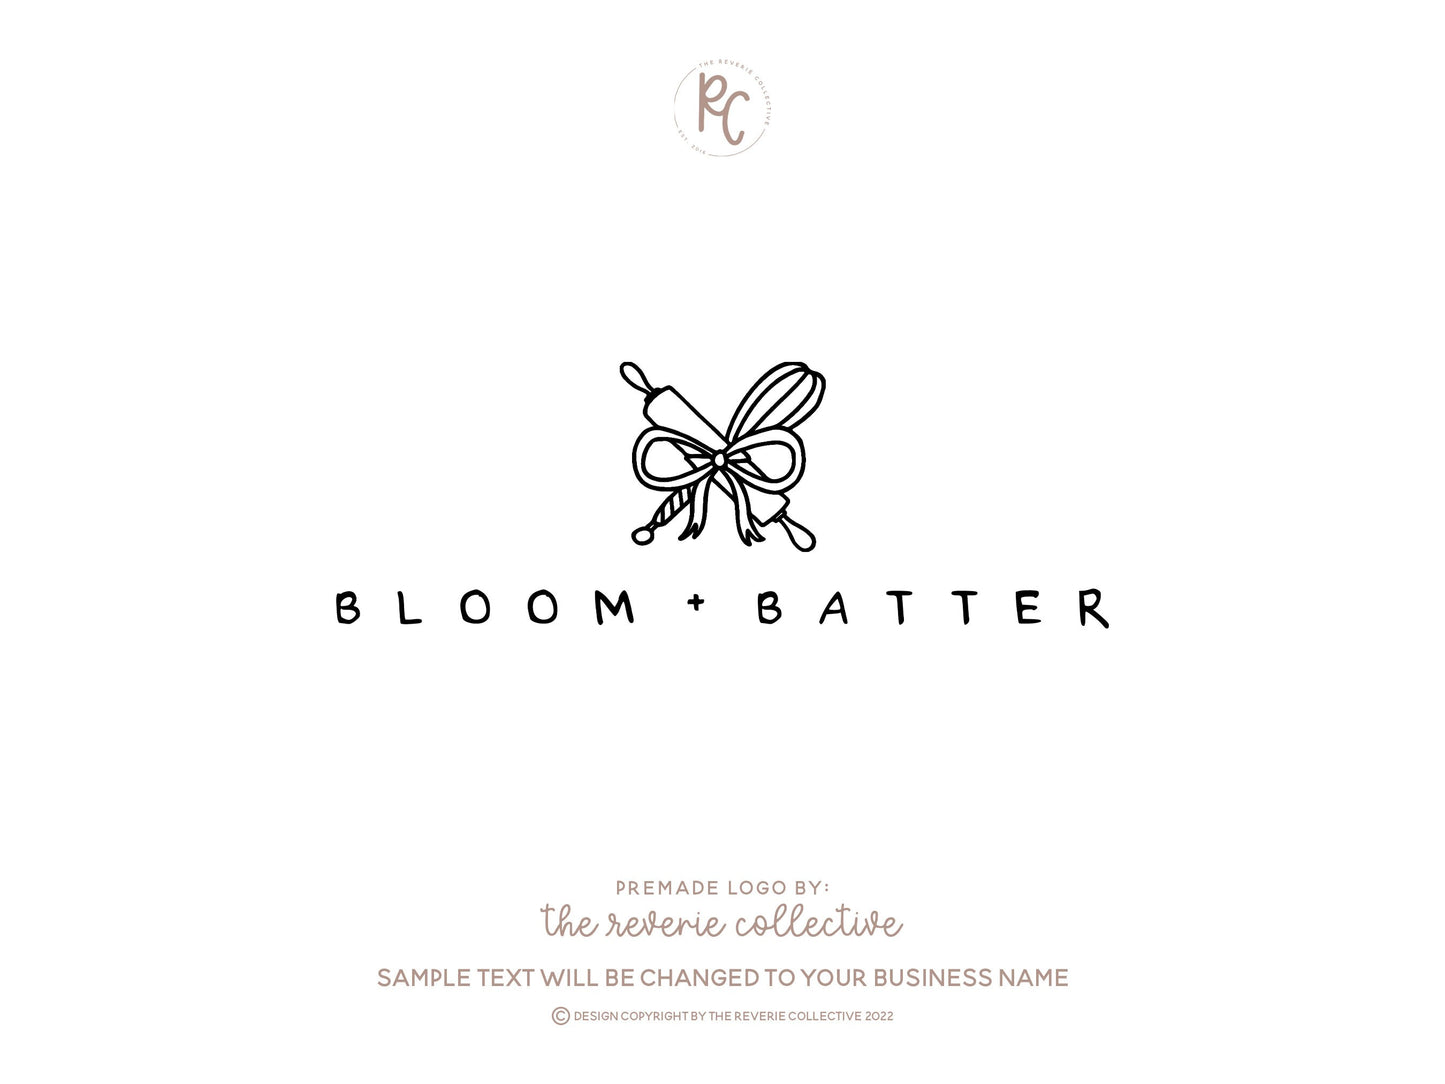 Bloom + Batter | Premade Logo Design | Baking, Doodle, Whisk, Rolling Pin